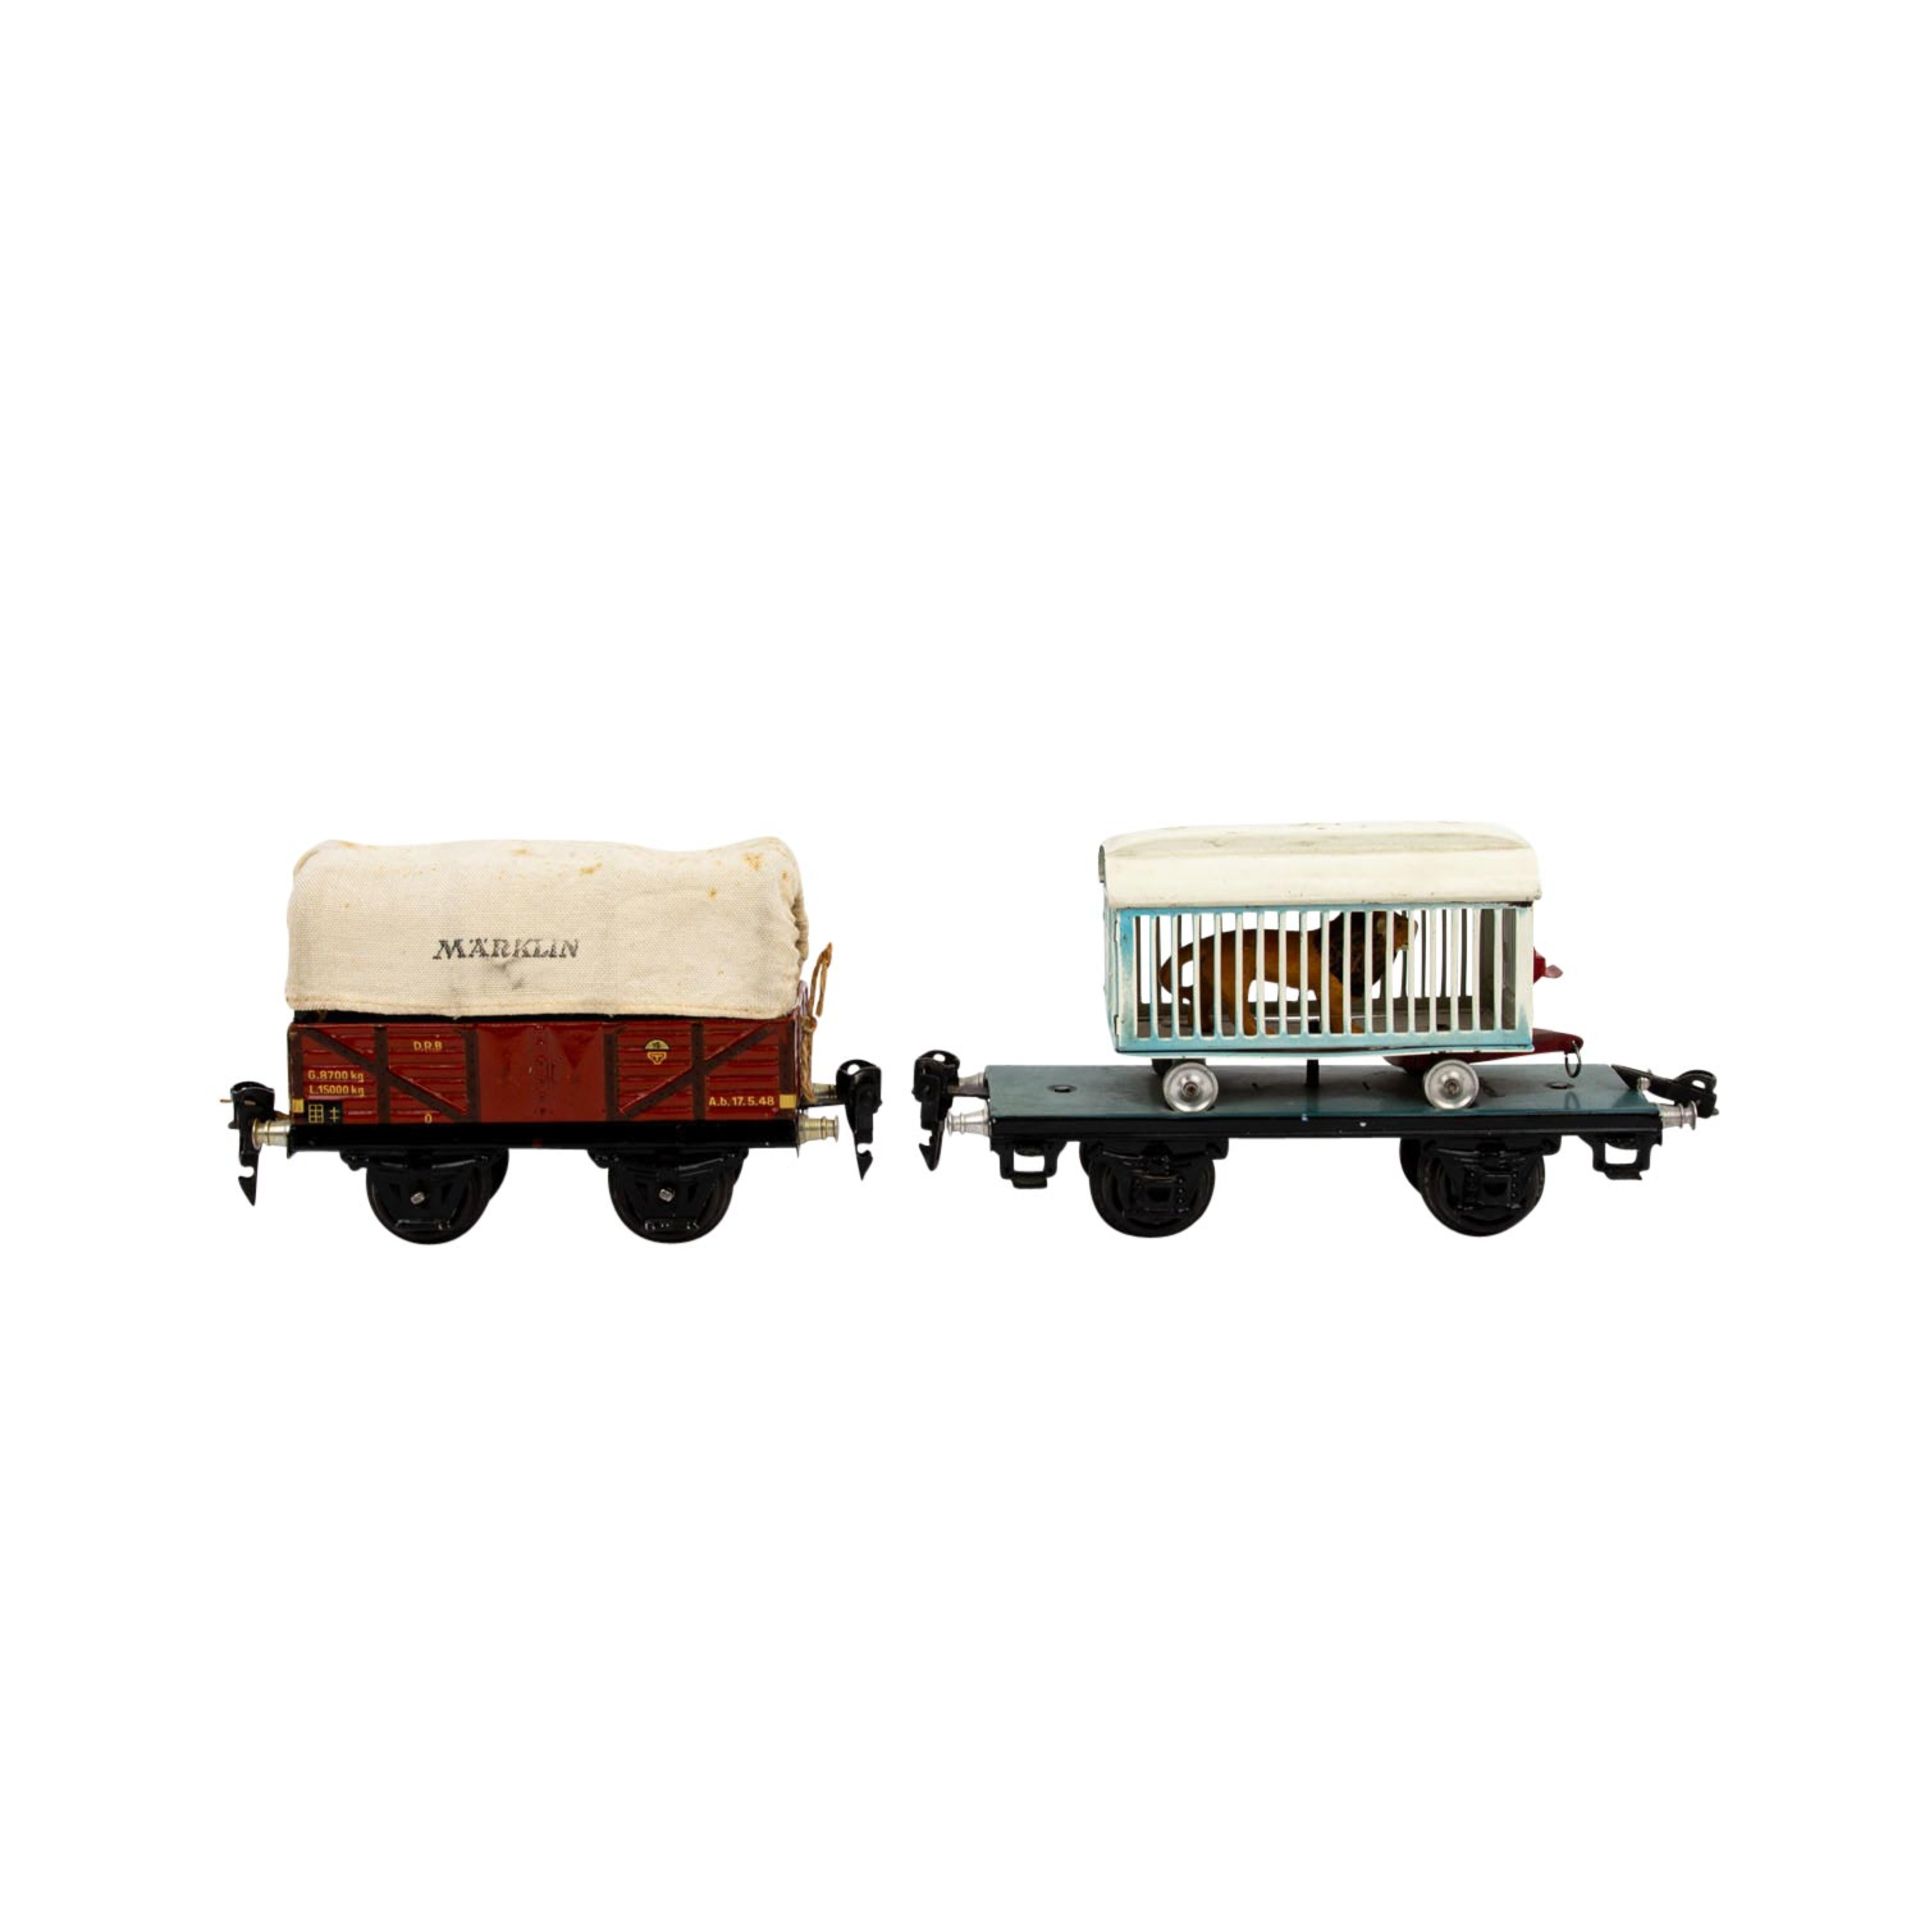 MÄRKLIN zwei Güterwagen, Spur 0, 1930er Jahre, bestehend aus Plattformwagen blau/sch - Image 5 of 7